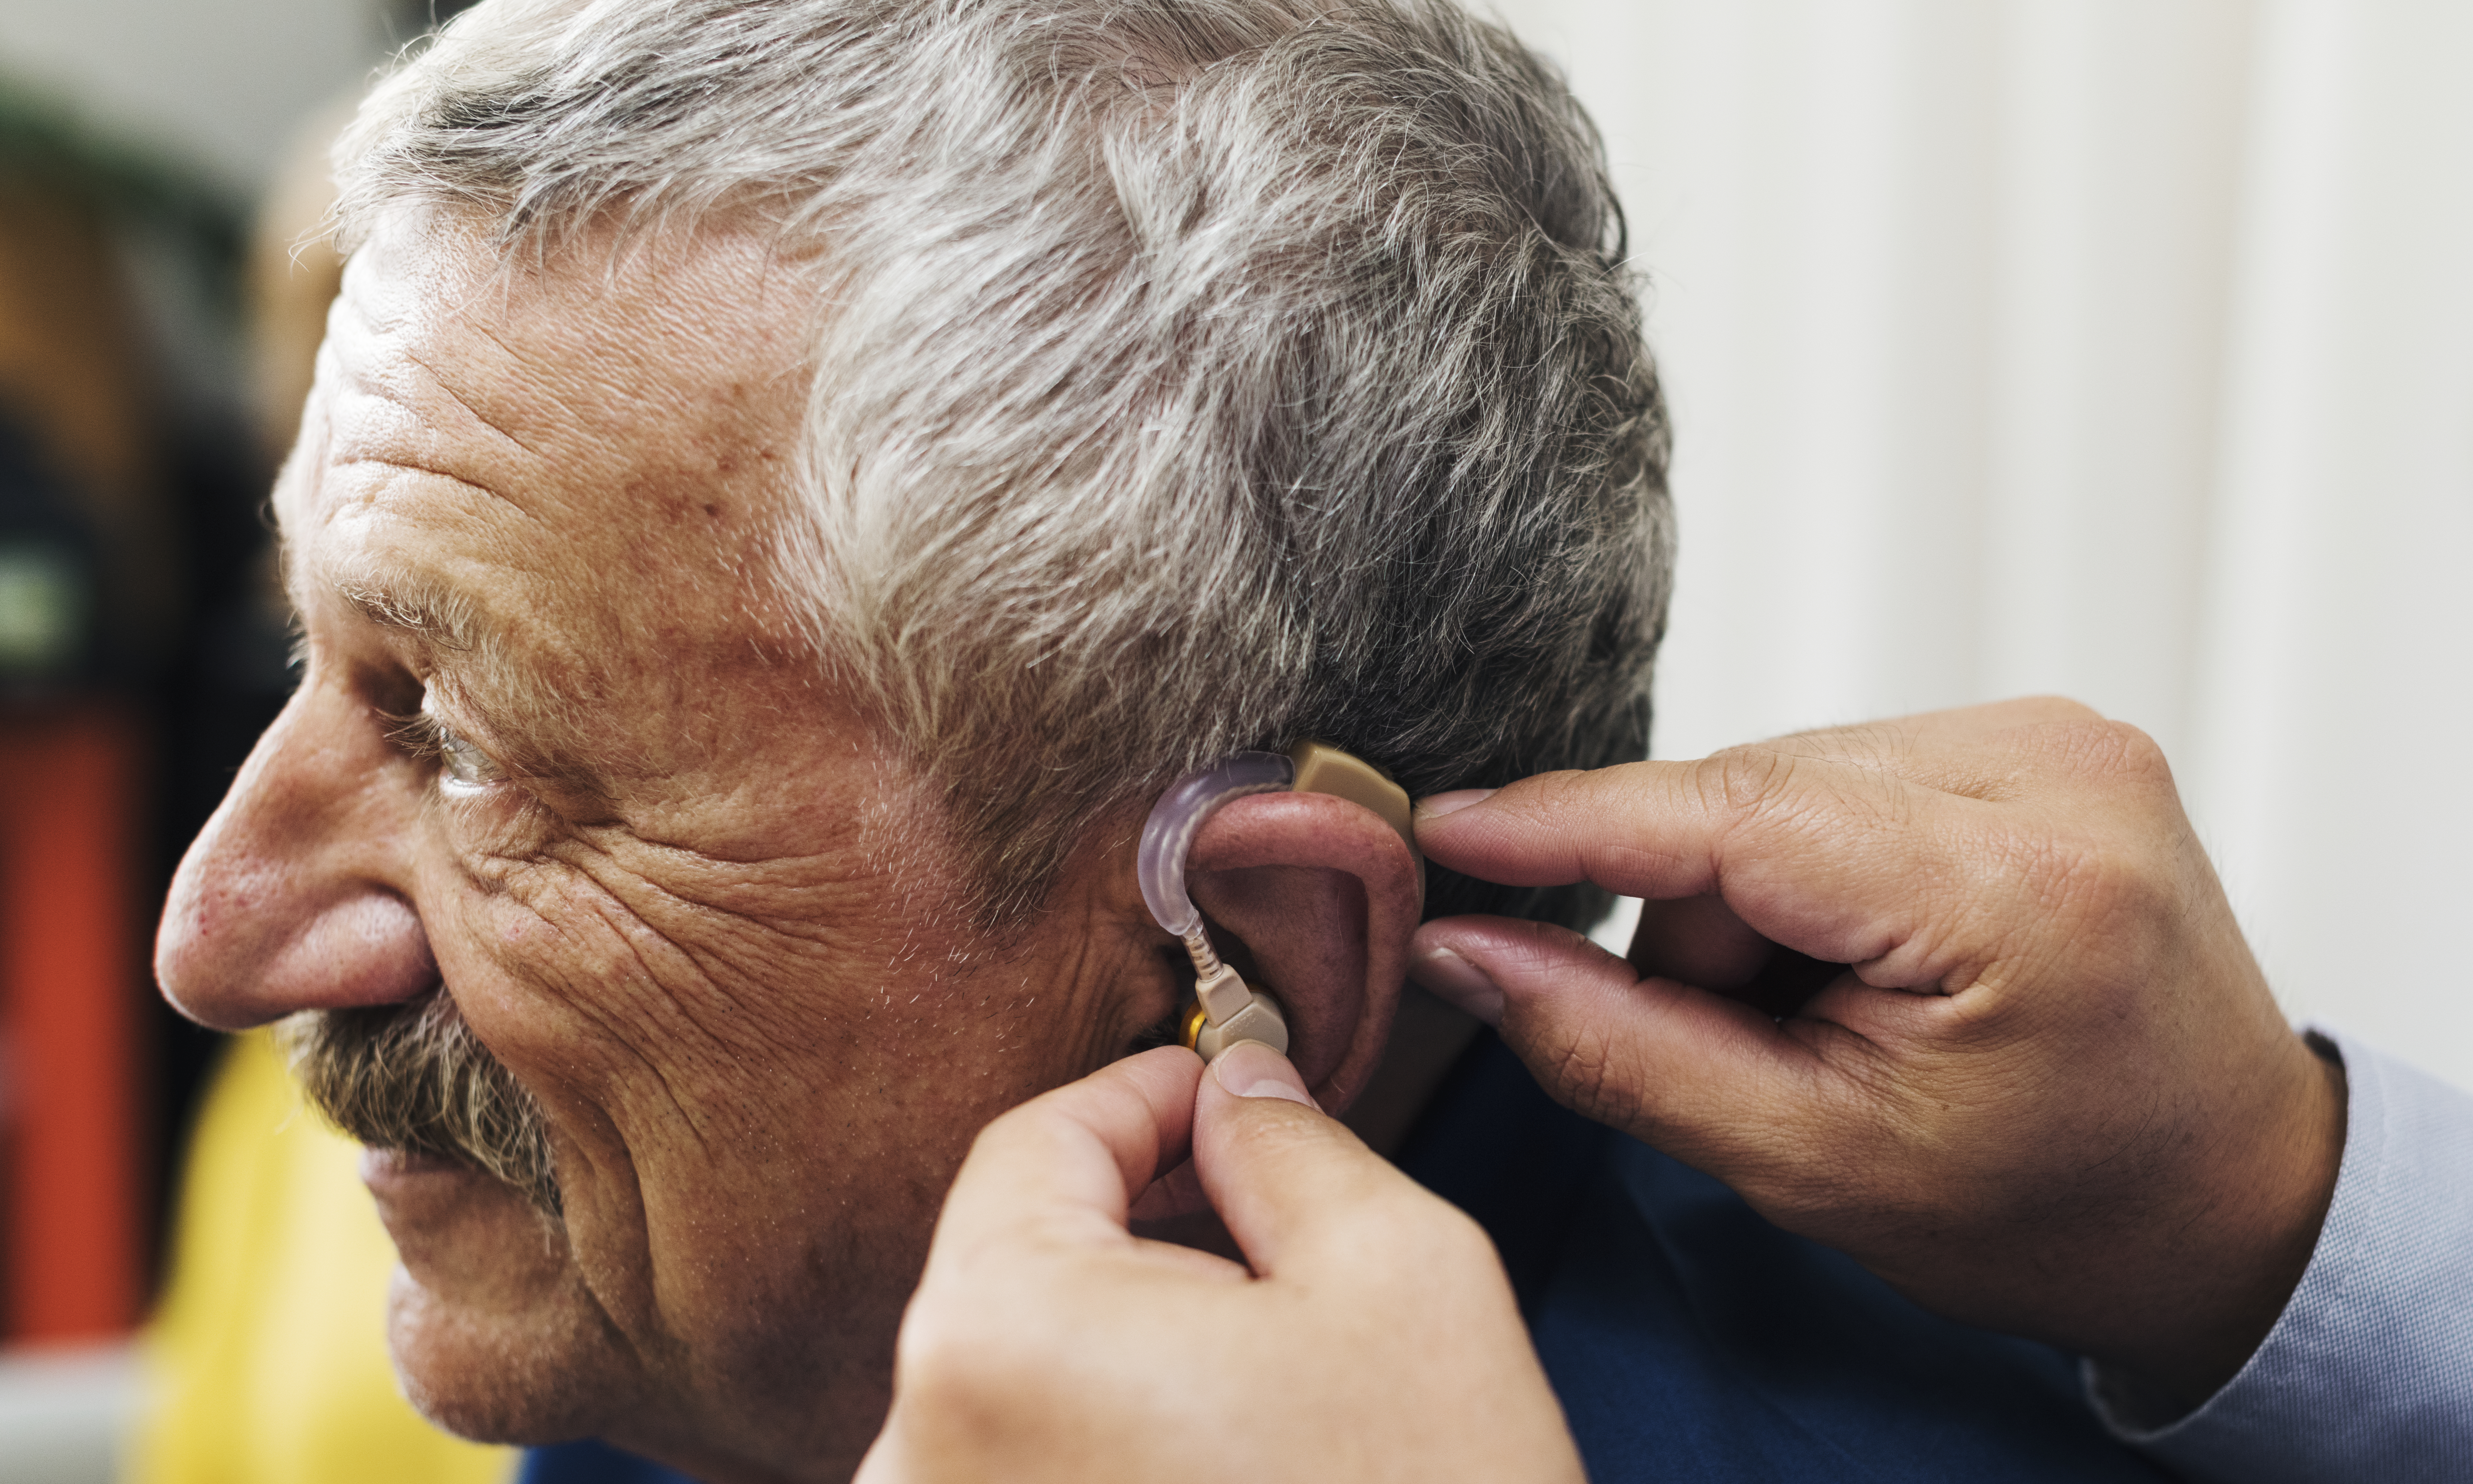 Estudio UC elevó a un 68% la adherencia al uso de audífonos mediante programa de rehabilitación auditiva en adultos mayores